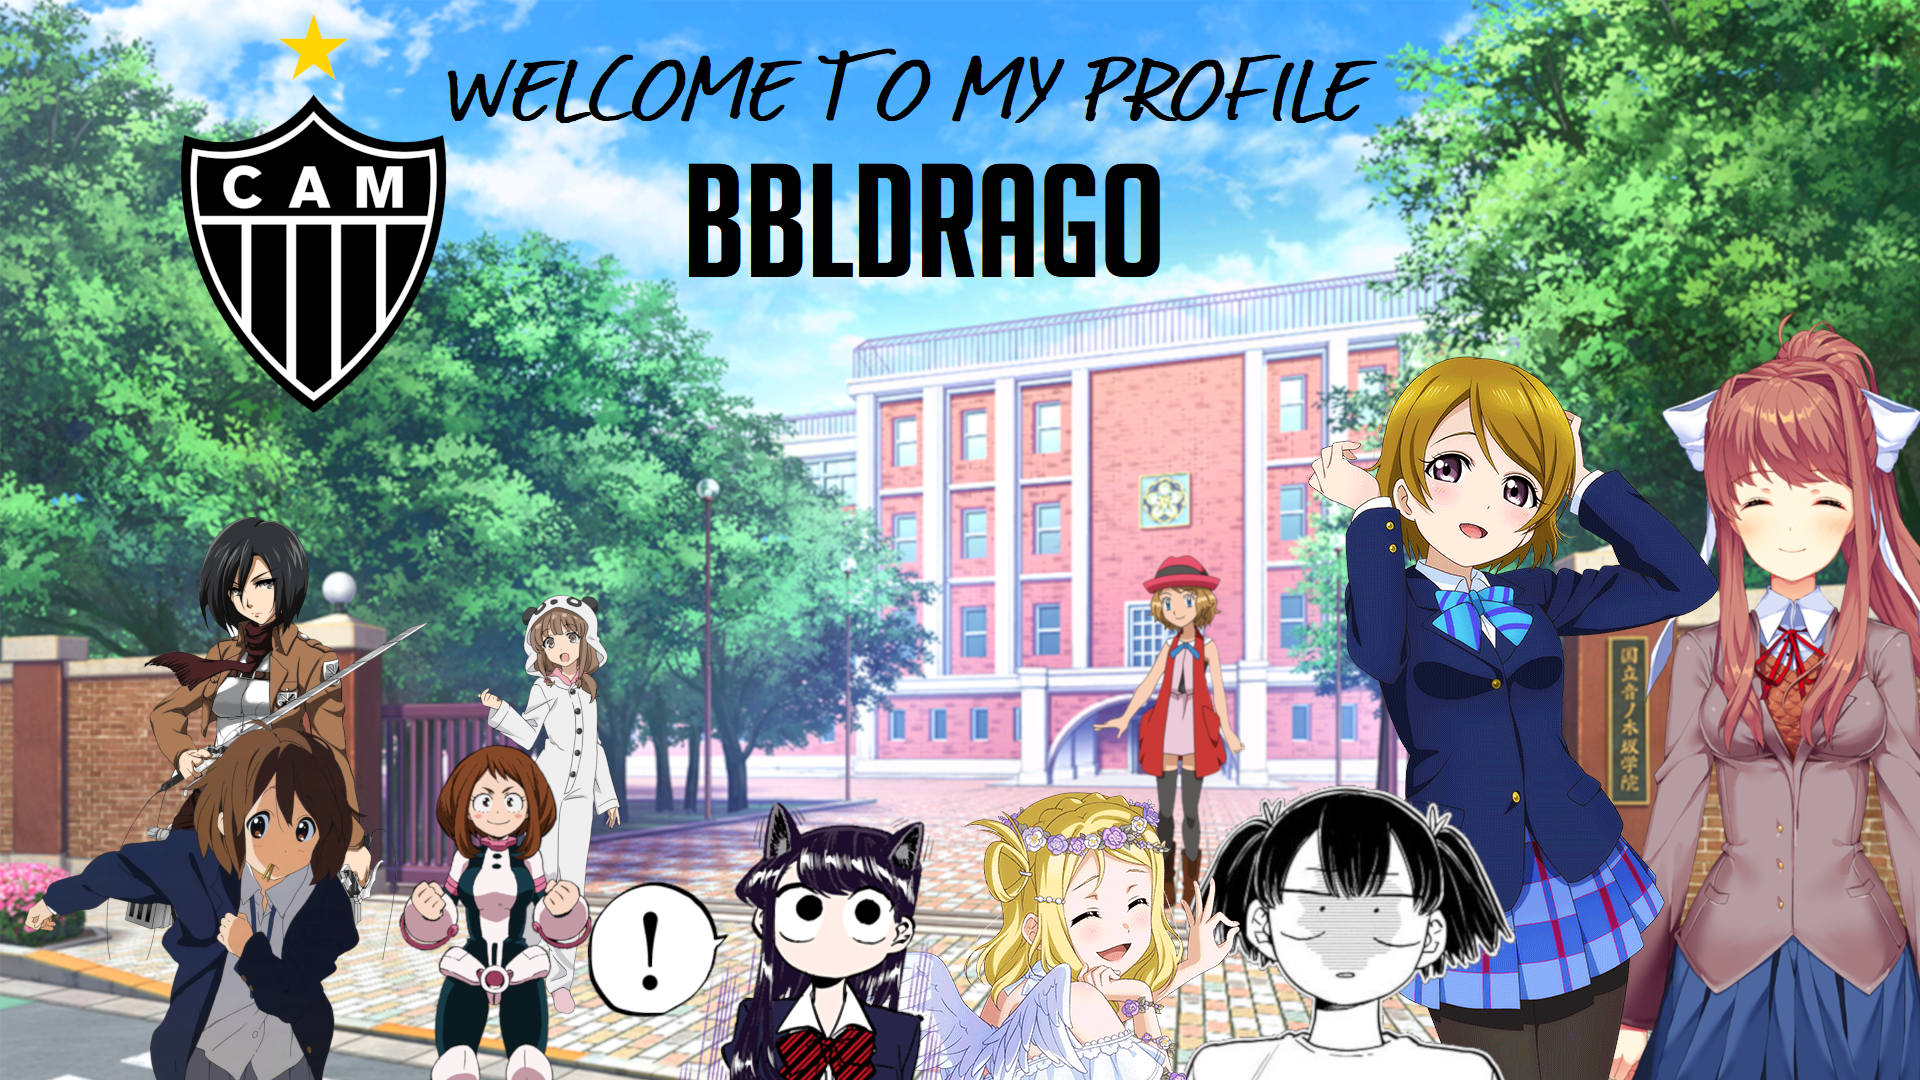 BblDrago's Profile 